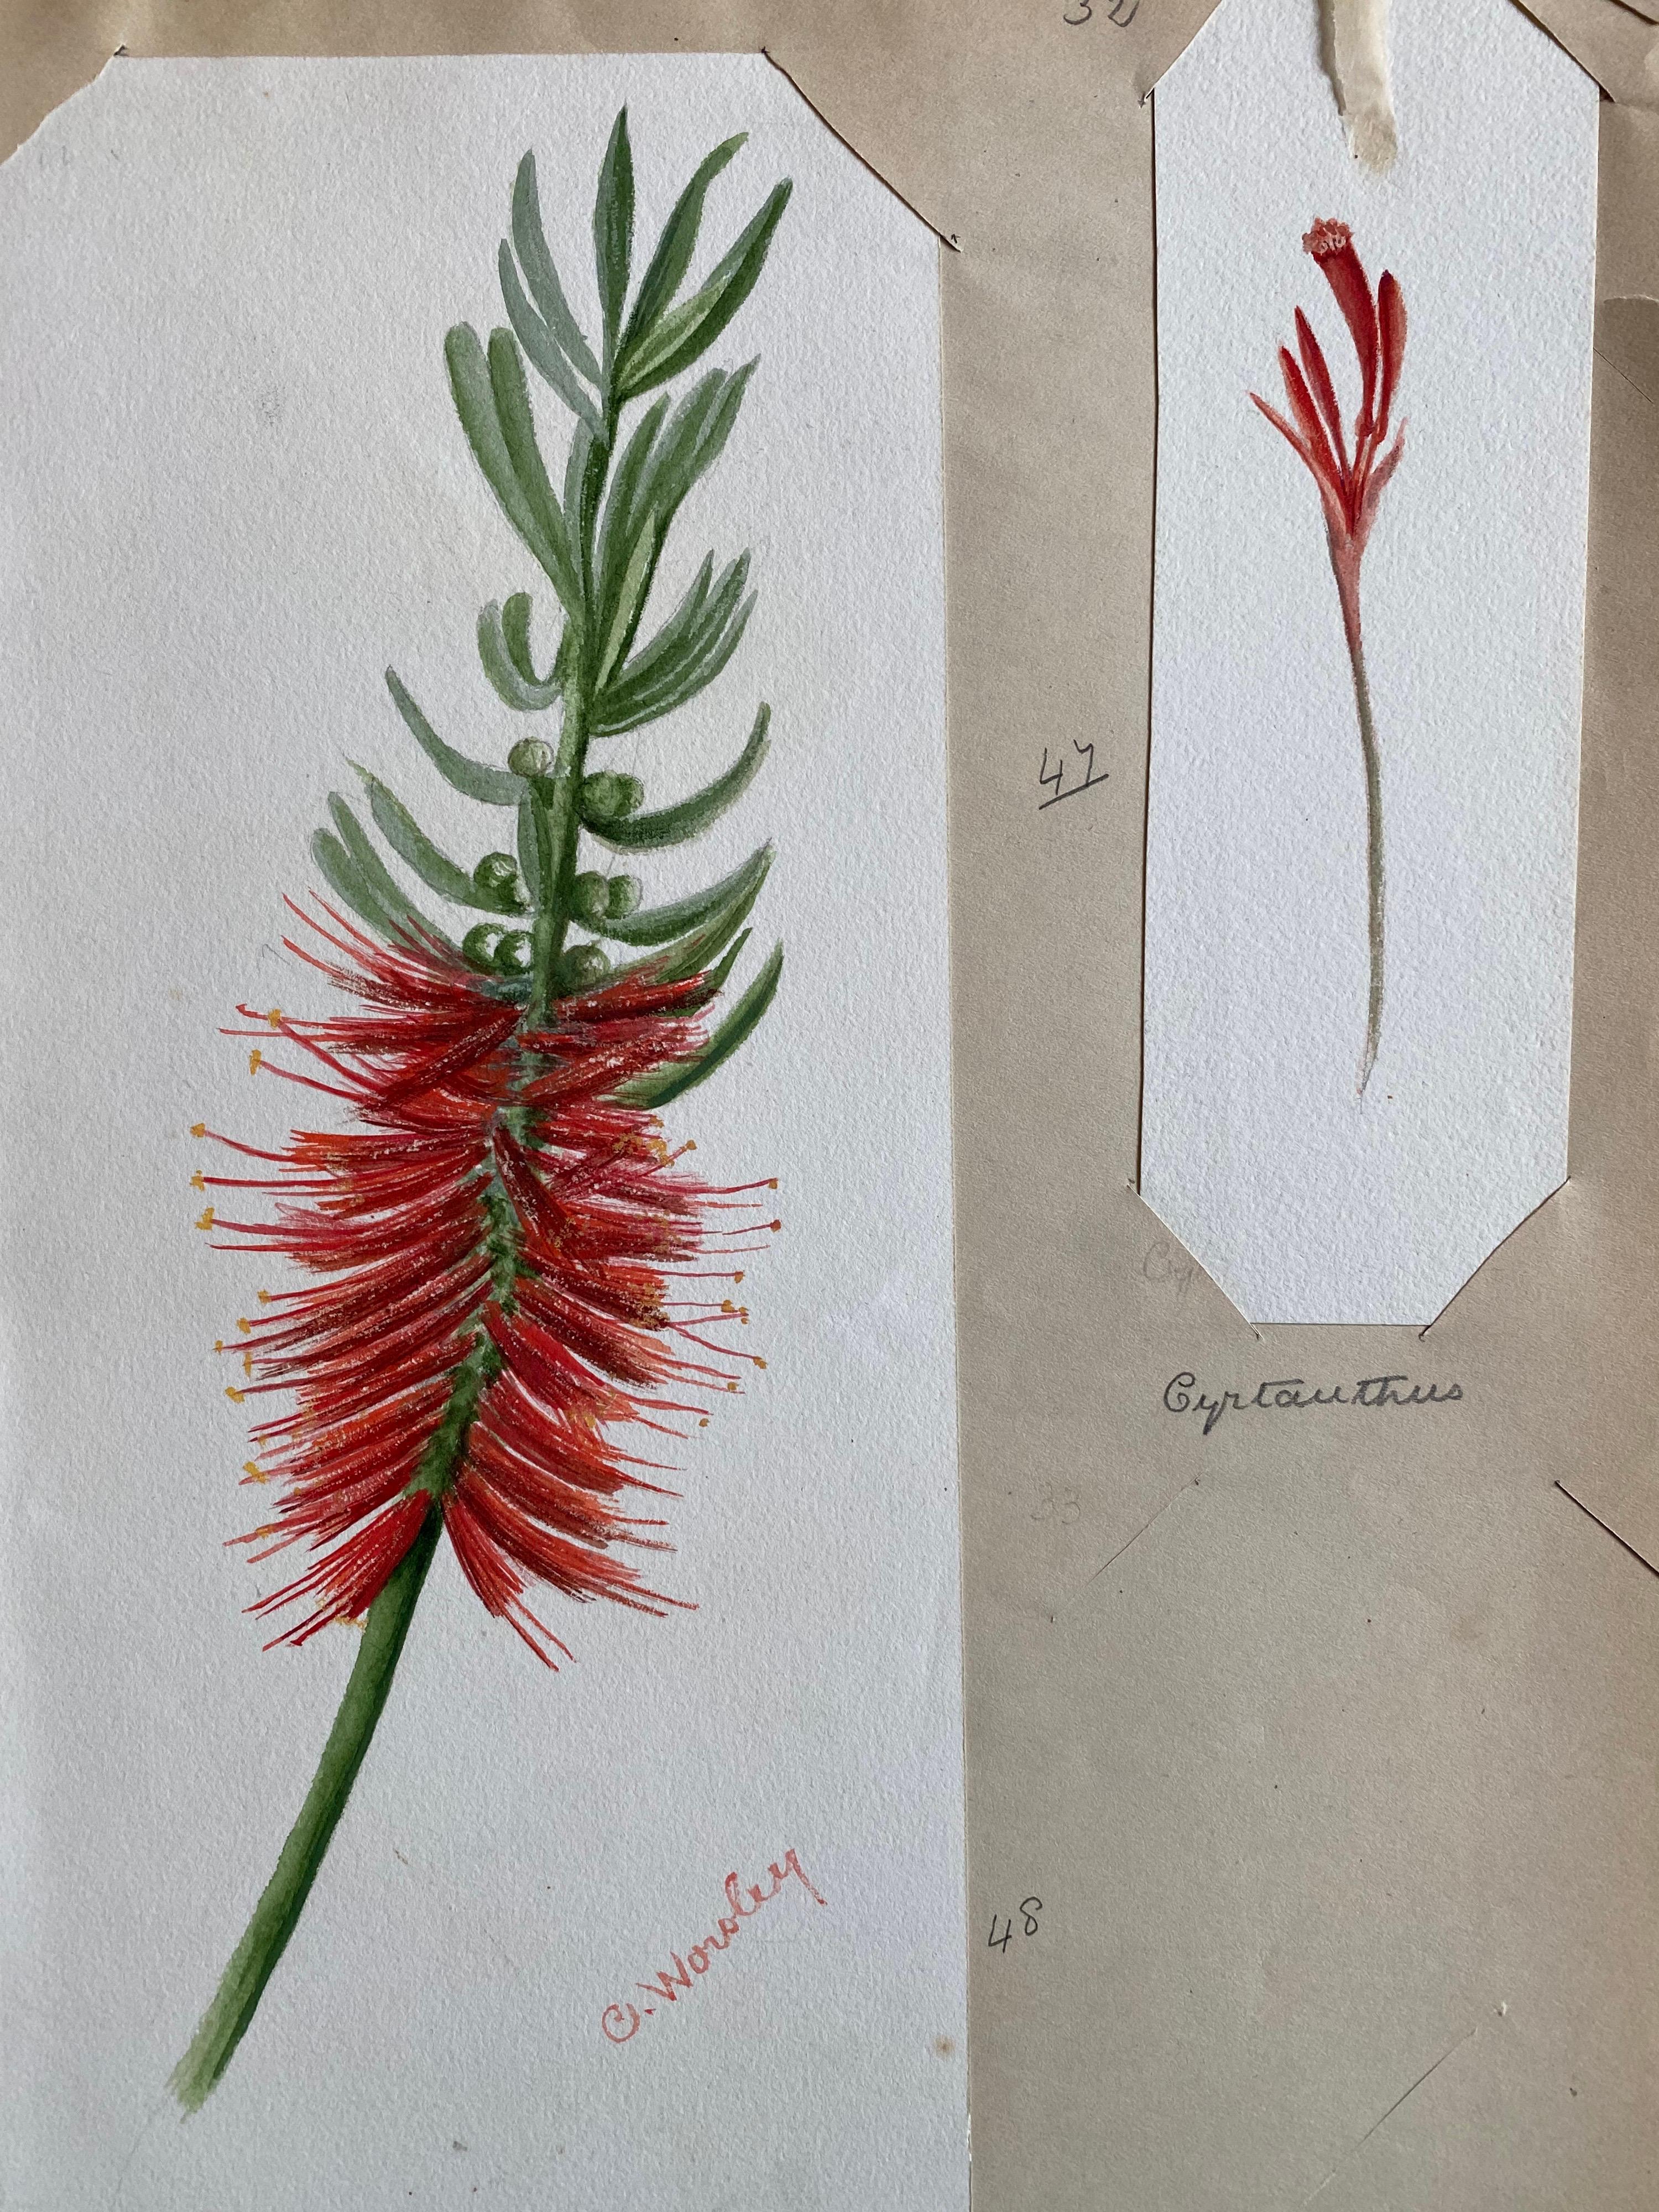 Zwei sehr schöne originale englische botanische Aquarelle, die diese schöne Darstellung einer Blume/Pflanze zeigen. Das Werk stammt aus einer Privatsammlung in Surrey, England, und war Teil eines Albums mit Werken, die der Künstler in den frühen